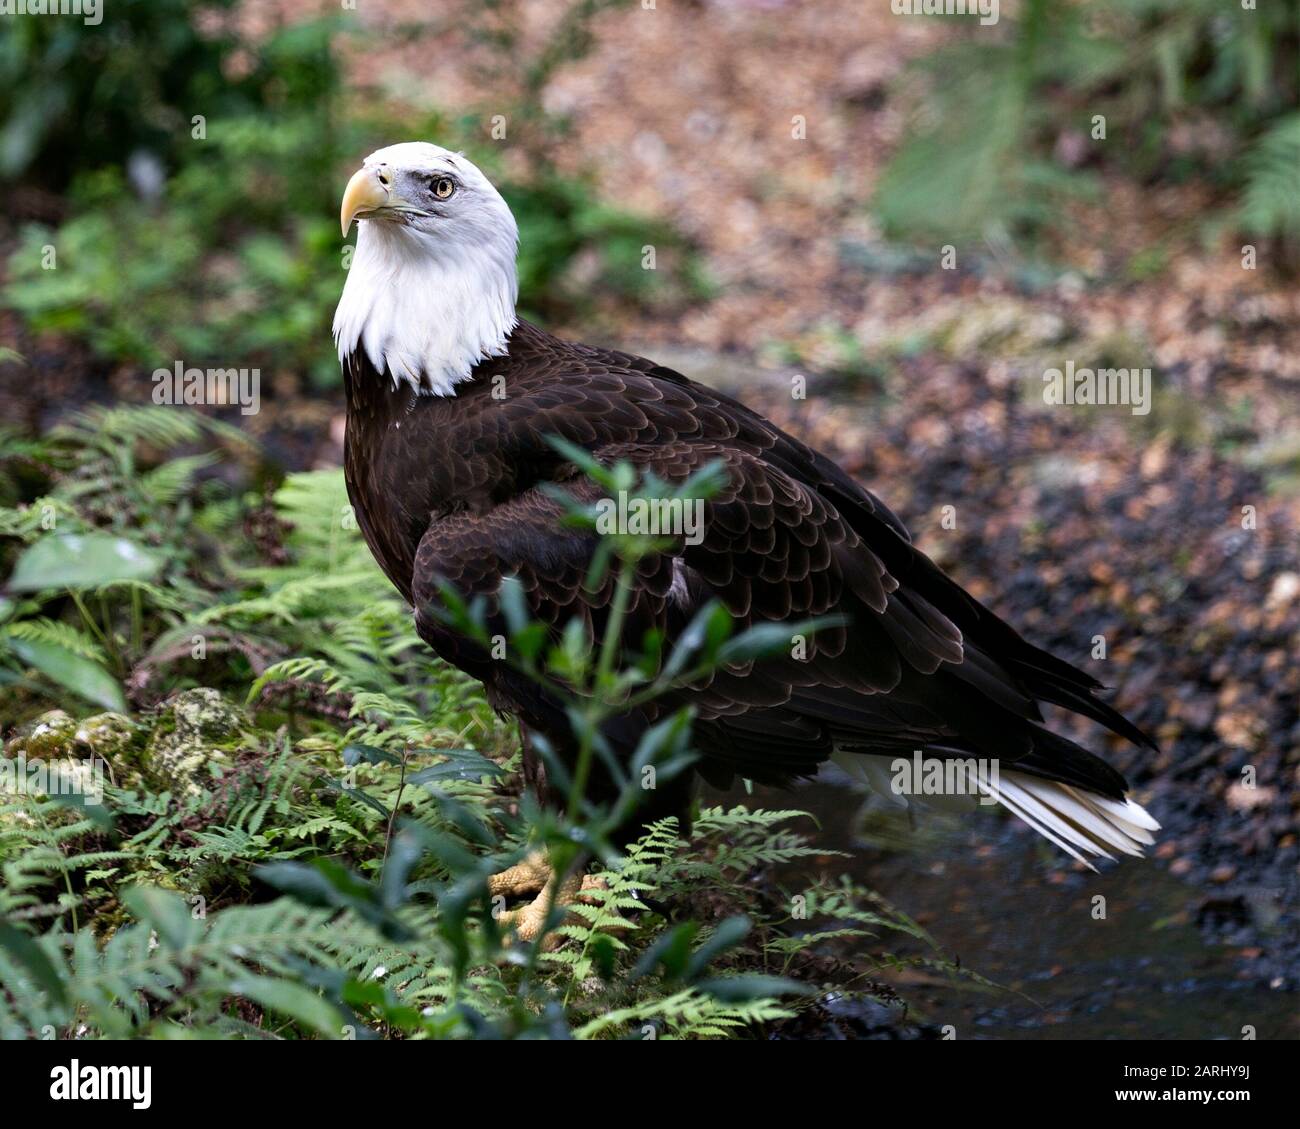 Vista de primer plano de pájaro Bald Eagle que muestra plumas, cabeza blanca, ojo, pico, talones, plumaje, cola blanca, en su entorno y entorno con Foto de stock